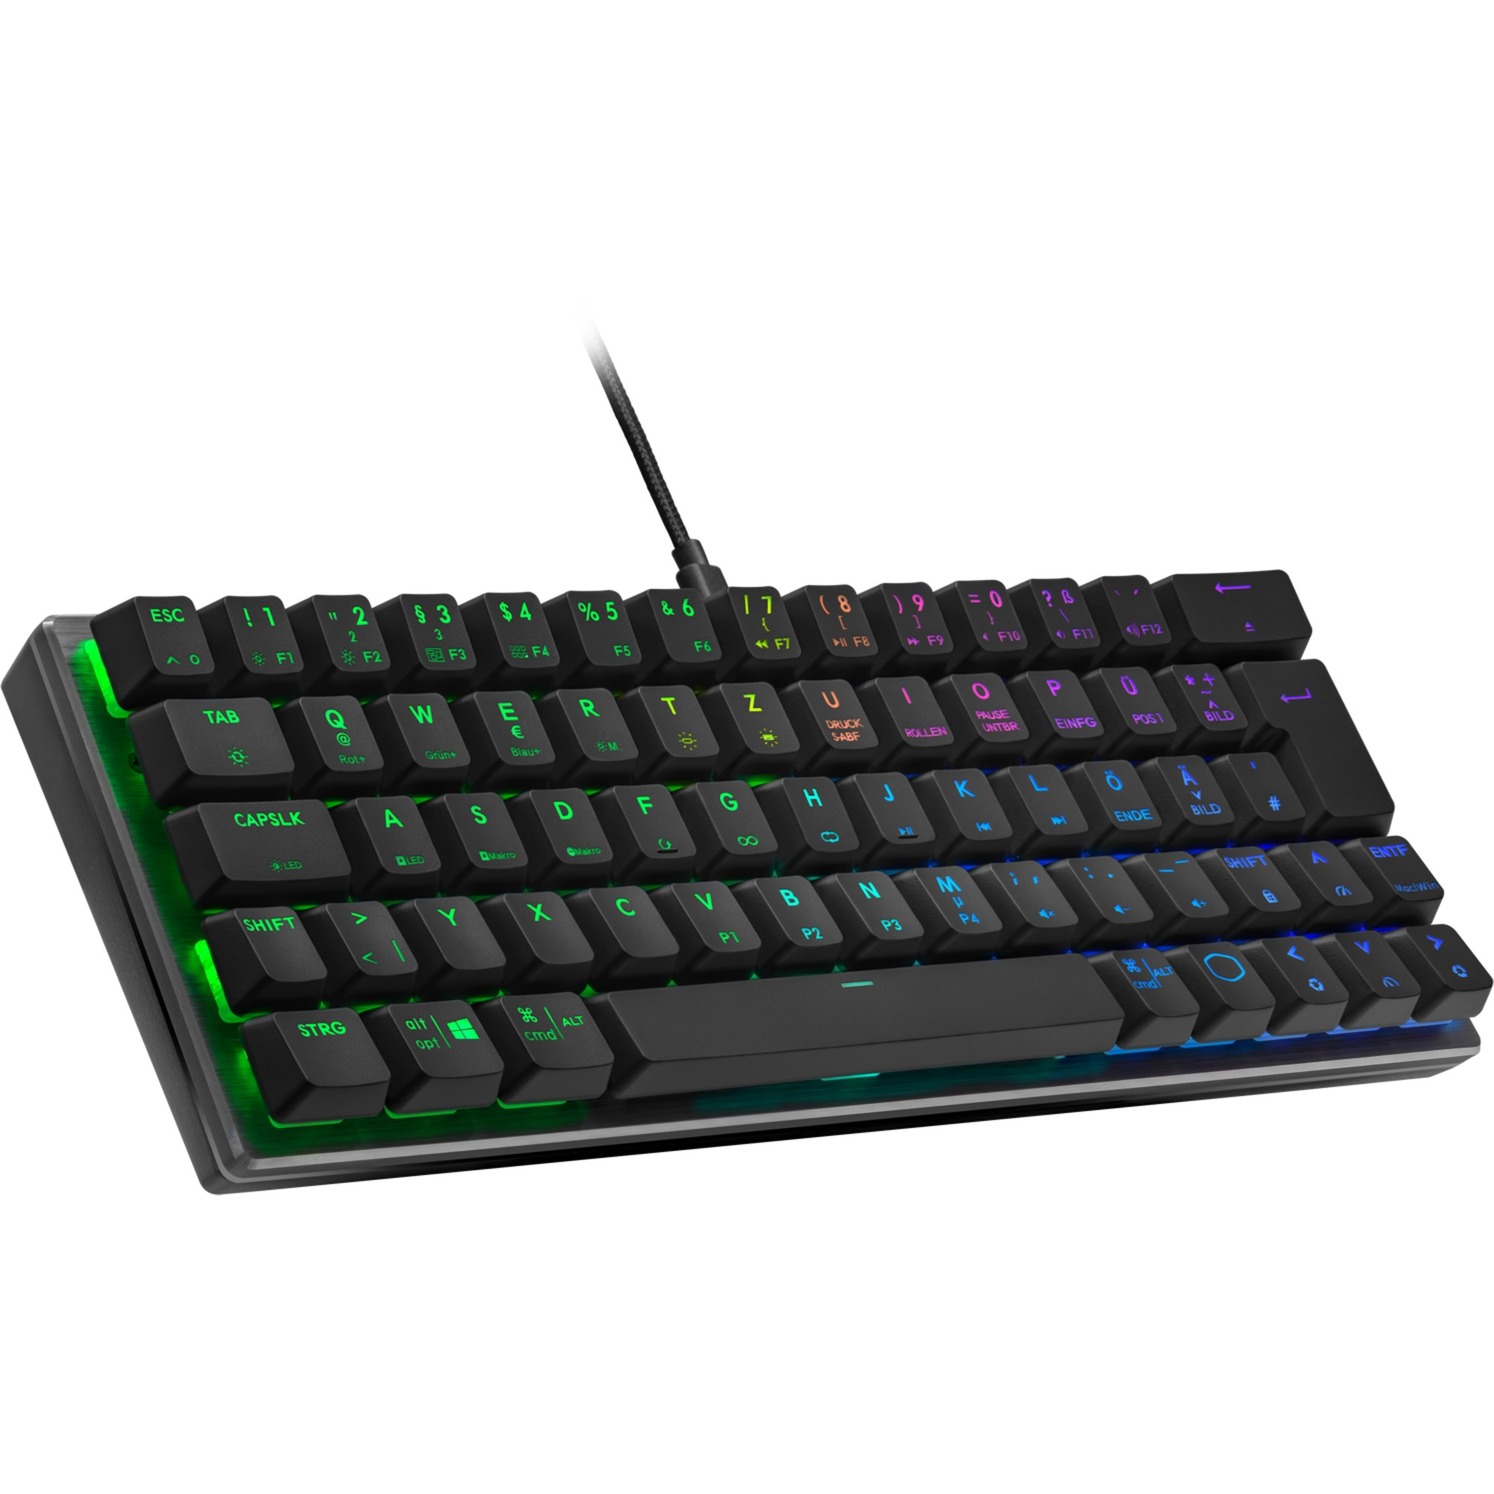 Image of Alternate - SK620, Gaming-Tastatur online einkaufen bei Alternate